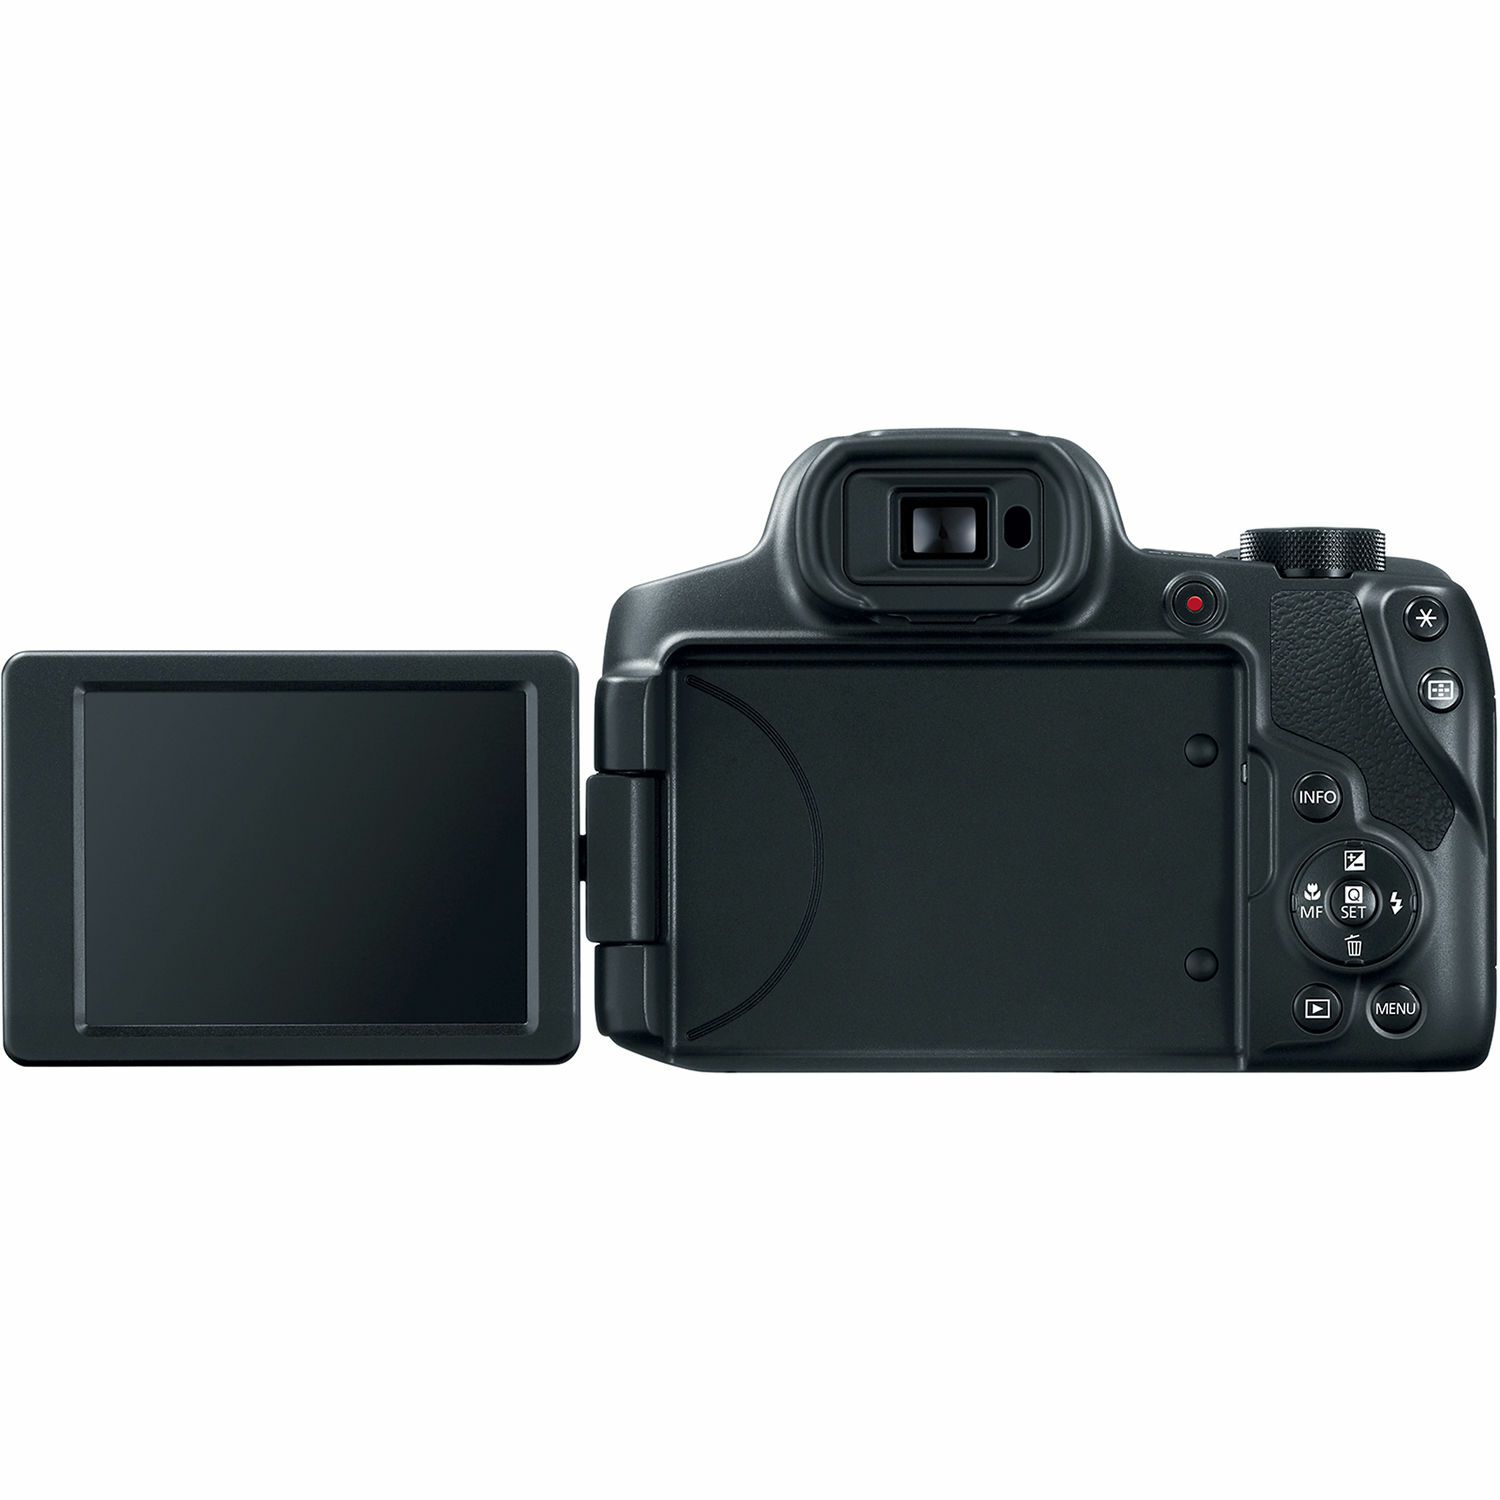 Canon PowerShot SX70 HS kompaktni digitalni fotoaparat SX70HS ultrazoom 65x s integriranim objektivom 3.8-247mm f/3.4-6.5 IS (3071C002AA)